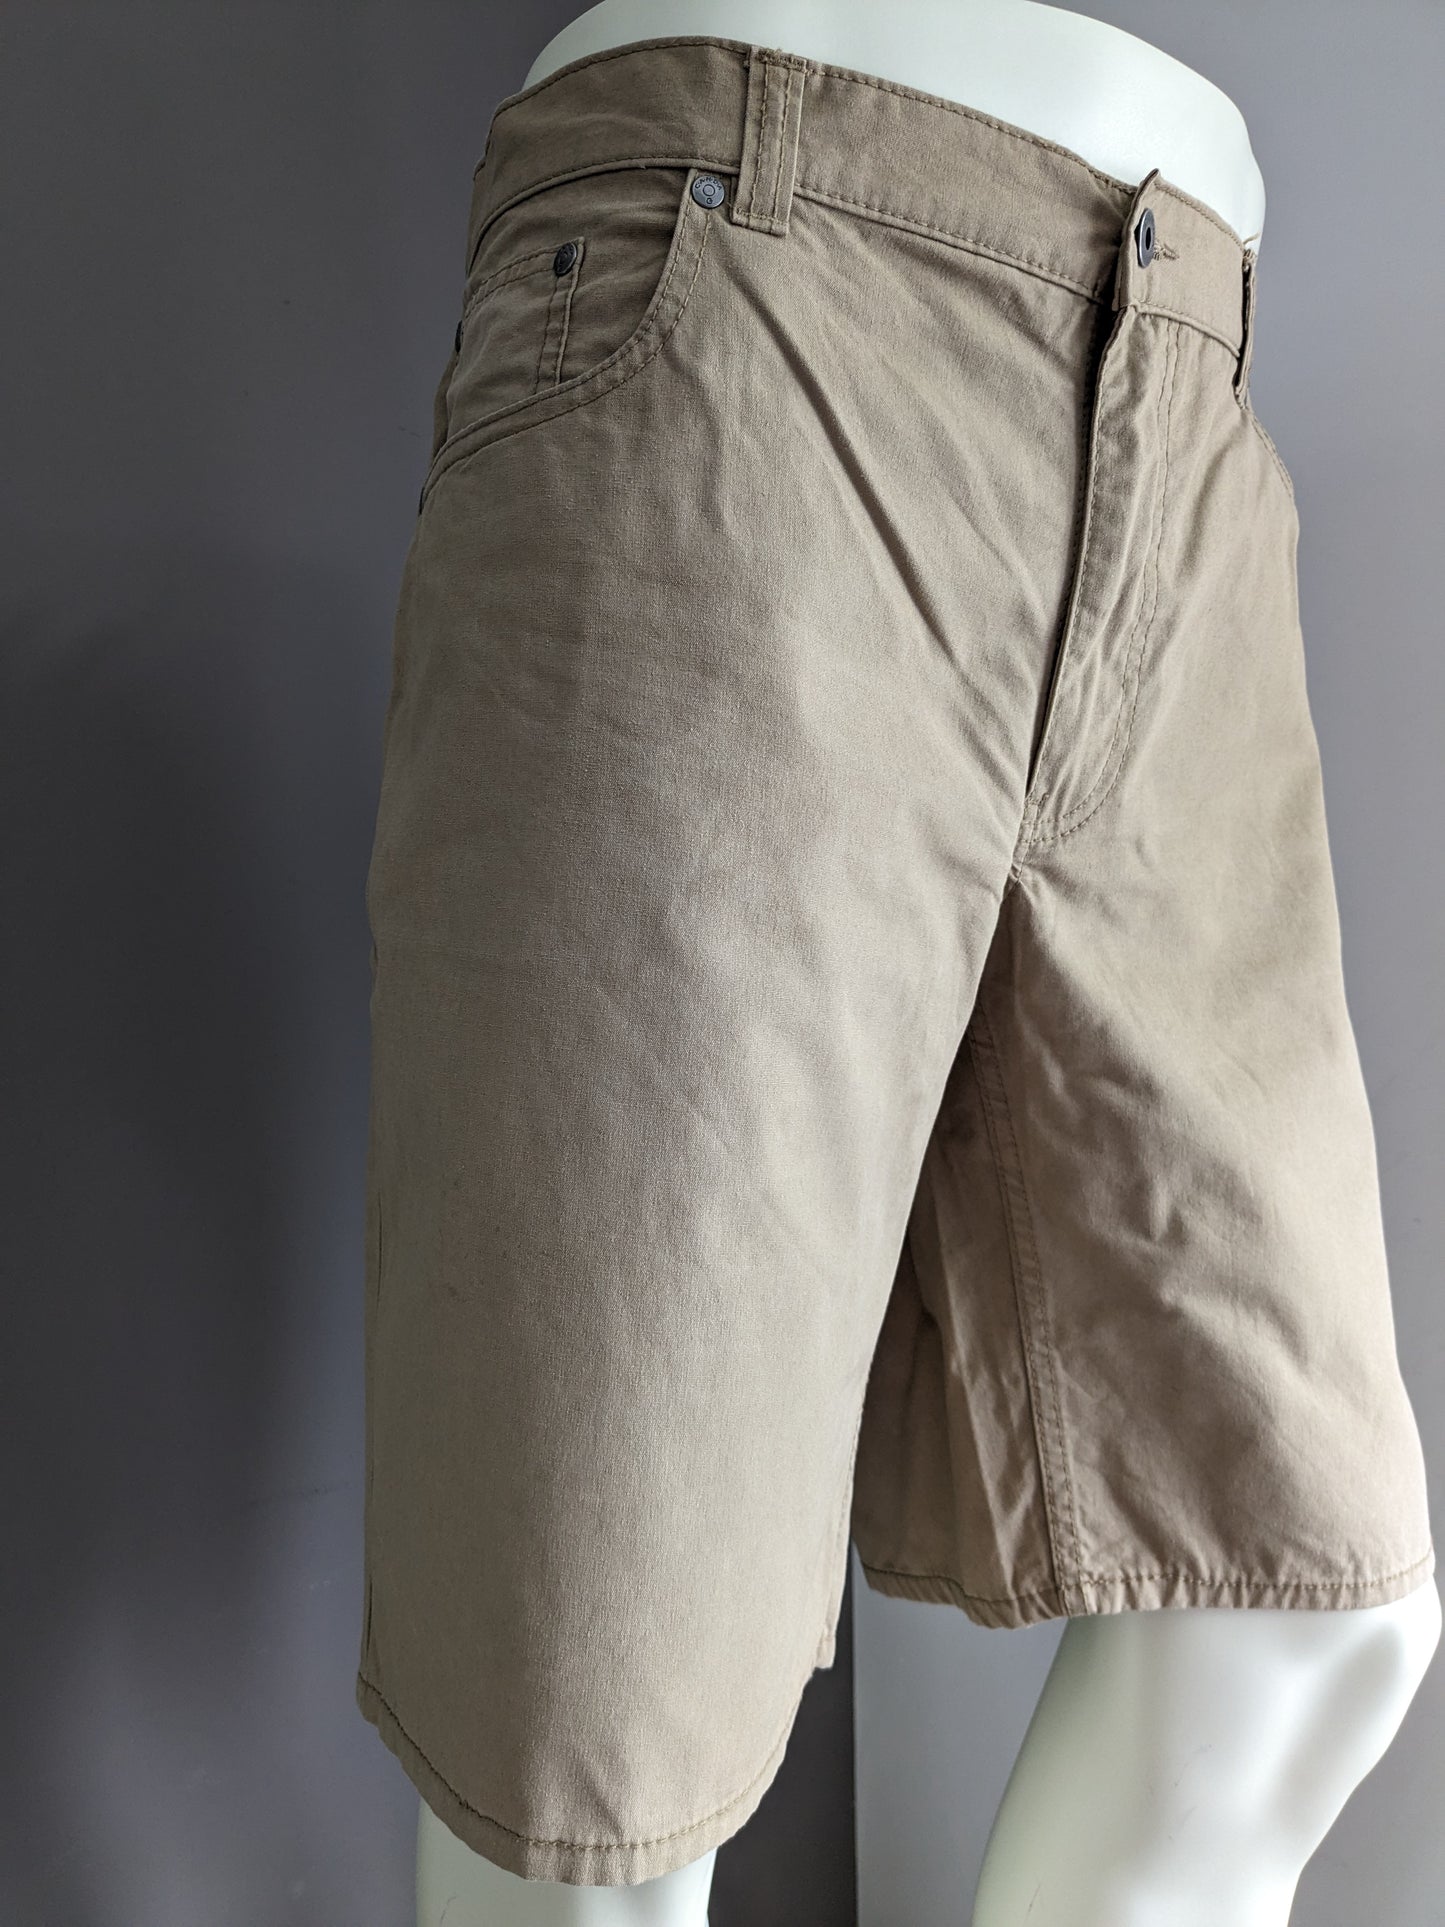 Pantalones cortos de Canda. Color marrón claro. Tamaño 58 / xl.